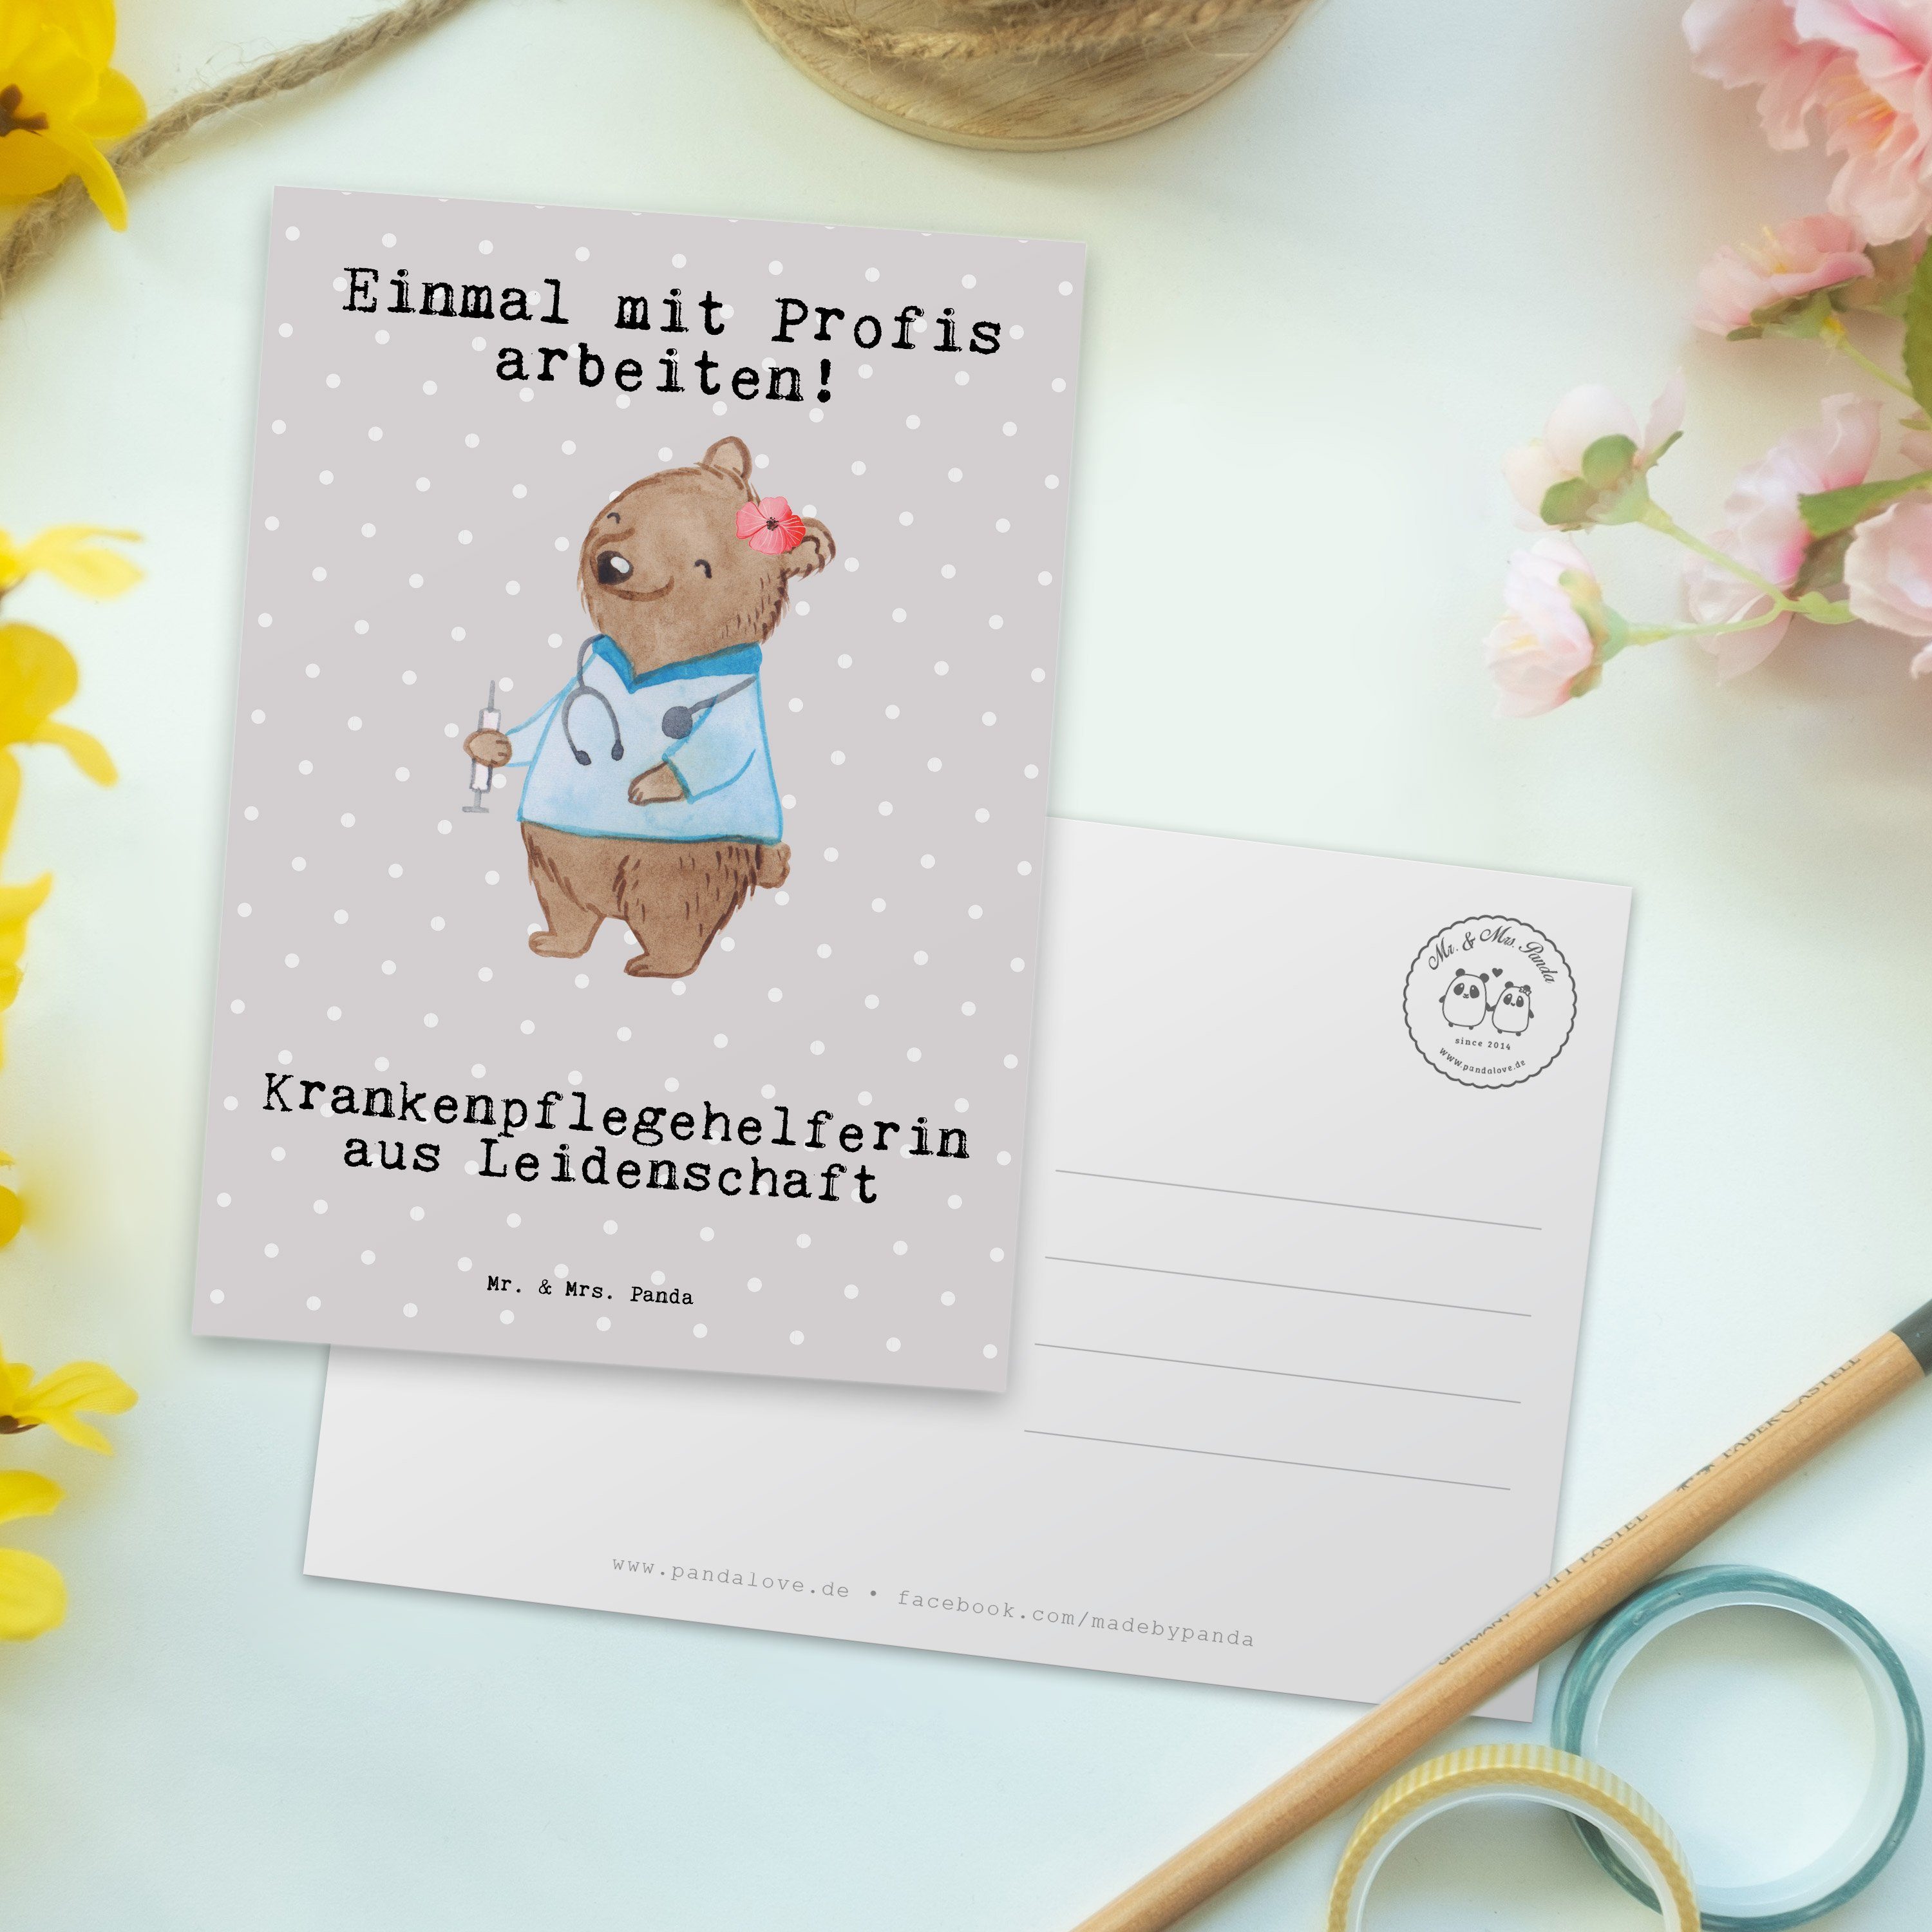 Mr. & Leidenschaft aus Postkarte Mrs. Panda Sch Grau Krankenpflegehelferin - Geschenk, - Pastell